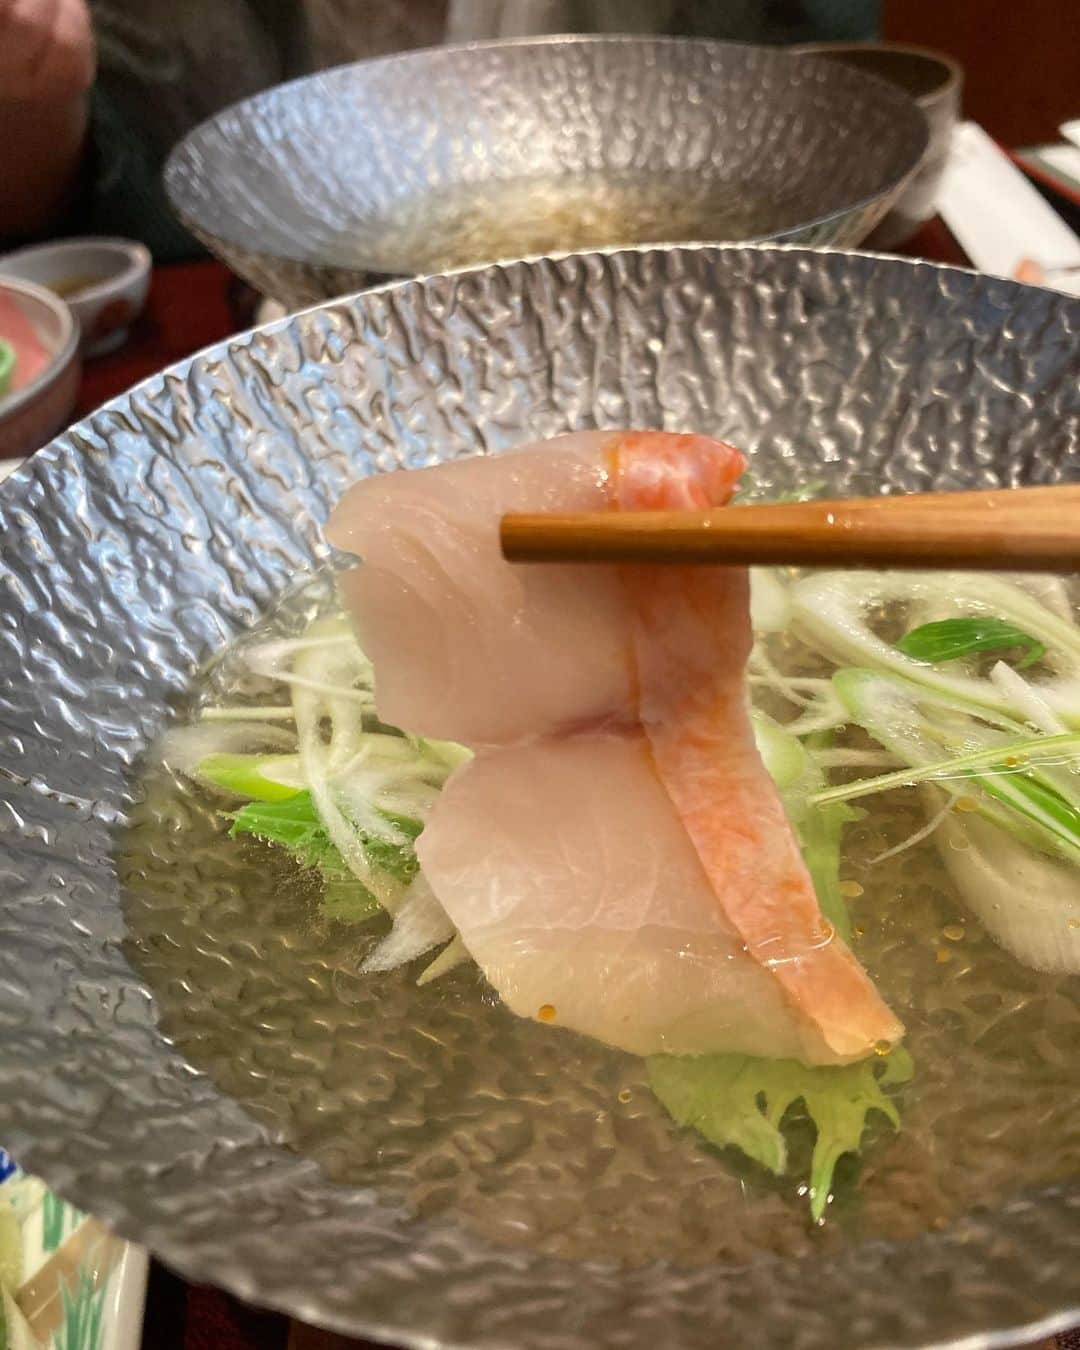 上田愛子さんのインスタグラム写真 - (上田愛子Instagram)「#愛子先生の出雲旅行⛩  とにかくずっと食べてたw 2キロくらい太ったw  写真を美味しくて感動した順に 並べてみました🥢  島根はどのお料理も美味しくて… 本当に最高だった。  お蕎麦もお魚もお肉も 全部美味しくてびっくりした。  それでは長いですが よかったら読んでください🥢  ①出雲大社の中の揚げ物かまぼこ屋さん 揚げたてアゴ入りメンチカツ アゴのすり身を使ったメンチカツ。超めずらしい。 東京にはあまりない味。サックサクの揚げたてで150円くらいだし衝撃の美味さだった！🐟  ②手打ち十割蕎麦　出雲そば 砂屋さんの3色出雲蕎麦 美味すぎた。数々の蕎麦を食べまくってる私が言うのだから間違いない。甘めの濃いめのお出汁をかけて、好きな薬味を乗っけて頂くお蕎麦。食べ飽きないし、出汁が美味すぎて飲んじゃえるくらいw 十割蕎麦はポソポソになりがちなのに、 しっとりと柔らかく蕎麦の香りは強くて最高だった。 40分並んだ甲斐がありました。  ③ のどぐろ丼　しじみ汁セット 出雲大社目の前の新世界という小さなお店 島根ののどぐろは安くて脂乗ってて美味しいと聞いたので、のどぐろ大好きGALとしては食べるしかない！！ ほんまに脂乗っててとろけた… 量は少なめだけど、しじみ汁ついて1400円。 コスパ良き。あとこの店のアサヒ生ビールが冷えてて、樽の掃除ちゃんとしてるからなのか？ とにかく死ぬほど美味かったw 島根は生ビールがアサヒスーパードライばかりなのも推せる。まじ最高！ 近くの湖で取れたしじみは出汁と旨みが凄い。 身も大きくて最高！肝臓にも良い！  ④のどぐろ丼と同じ店で食べた生牡蠣 牡蠣の刺青入ってるくらい牡蠣好きだから食べないわけにはいかぬ。1000円とコスパ良くはないが、なんかめちゃくちゃ美味かった… 大きくてサッパリとして臭みがなく、 でも最後はクリーミー！ 生牡蠣もキーンと冷えて身はプリプリ！ 食べて良かった♡  ⑤⑥お宿 長楽園の夕食 真鱈と雲子の茶碗蒸し 無類の白子好きなわたしは雲子が大好き。 さらにそれを茶碗蒸しに入れてるなんてうまいに決まってる！！黒胡椒がきいた甘めの出汁と雲子のクリーミーさ、お魚の旨みが最高のハーモニーでした(語彙きもいね)  ⑦ お宿 長楽園の夕食 金目鯛のしゃぶしゃぶ 二日目のお夕食ででてきた、しゃぶしゃぶ。 脂の乗った金目鯛を熱々の出汁にしゃぶしゃぶして おネギと一緒に自家製のゴマだれにつけて頂く… うま！？うめえ！！ なんだ！？なんでこんな美味いんだ！？ 出汁が美味すぎて全部飲み干したよw アゴだしと金目鯛の出汁に甘め醤油の味かな？ とにかく金目鯛はプリプリだし、 出汁飲み干すくらい美味しかった。。  ⑧お宿 長楽園の夕食 サザエのお刺身 妹が頼んだ、別料金のサザエ刺身。 私たち姉妹は貝がめちゃくちゃ好きだ。笑 見て！わかる？サザエの肝の色がすごいの。 新鮮すぎて黄緑色っぽいの！ 身はコリコリシコシコで最高に美味しかった追加料金1500円くらいだったかな？ とにかく何もかも安くて美味しい。 海鮮が美味しくて幸せです。  ⑨ お宿 長楽園の夕食 これも2日目の締めのご飯。 雲丹の釜飯。 地元の海で育った雲丹の炊き込みご飯。 目の前で釜飯で炊き上げてくれます🍚 炊き立てを食べれる幸せ。 薬味に小口ネギと島根県産のエゴマを混ぜてあって、 エゴマのプチプチとした食感とエゴマの風味が しっかり味の雲丹と素晴らしい味付けでした。 おかわりしたかった。  ⑩ お宿 長楽園の夕食 真鯛のカブト煮 甘めの味付けが最高に美味しかった！ 脂が乗っていて、辛口の島根県産の日本酒と最高に合う。 頬の身が特にプリプリしていて味が濃くて美味しかった。。パパが顔のままだと食べれないから、 身だけ取ってあげた優しいわたしw  以上です🥢🥢🥢 ぶっちゃけ旅館のお料理はお安めのツアーのだし お食事目当てじゃないから全然期待していなかったの。  でも二日間とも朝も夜もめちゃくちゃ美味しかった。 まじで感動した。 お料理を愛を込めて丁寧に作っているのがわかる。 素朴だけど美味しくて素材の旨味を感じる味付け。  派手さは全くないのだけど 口にすると、めっちゃくちゃ美味しい。 出汁やちょっと甘めの味付けが最高だ。 家族4人感動して、 めちゃくちゃな勢いで食べた。笑  お米も最高に美味しい。 お水が綺麗だからか地酒も最高。 物価も安くて、どんなものも安くて美味しくて とてもコスパが良かった。  島根県、最高すぎます。 またぜったい来たい！  今回泊まったお宿は 玉造温泉の長楽園というお宿だよ♨️  露天風呂も温泉も接客もお料理も 全て最高でした。ありがとうございました。  #愛子先生の出雲旅行⛩ まだまだ続くよw  #島根県 #島根旅行 #島根グルメ #島根観光 #出雲 #出雲大社 #出雲グルメ #出雲ランチ #出雲旅行 #出雲大社グルメ #出雲そば #出雲蕎麦 #玉造温泉 #玉造温泉グルメ #玉造温泉♨️ #長楽園」3月13日 10時31分 - aikosenseidayo